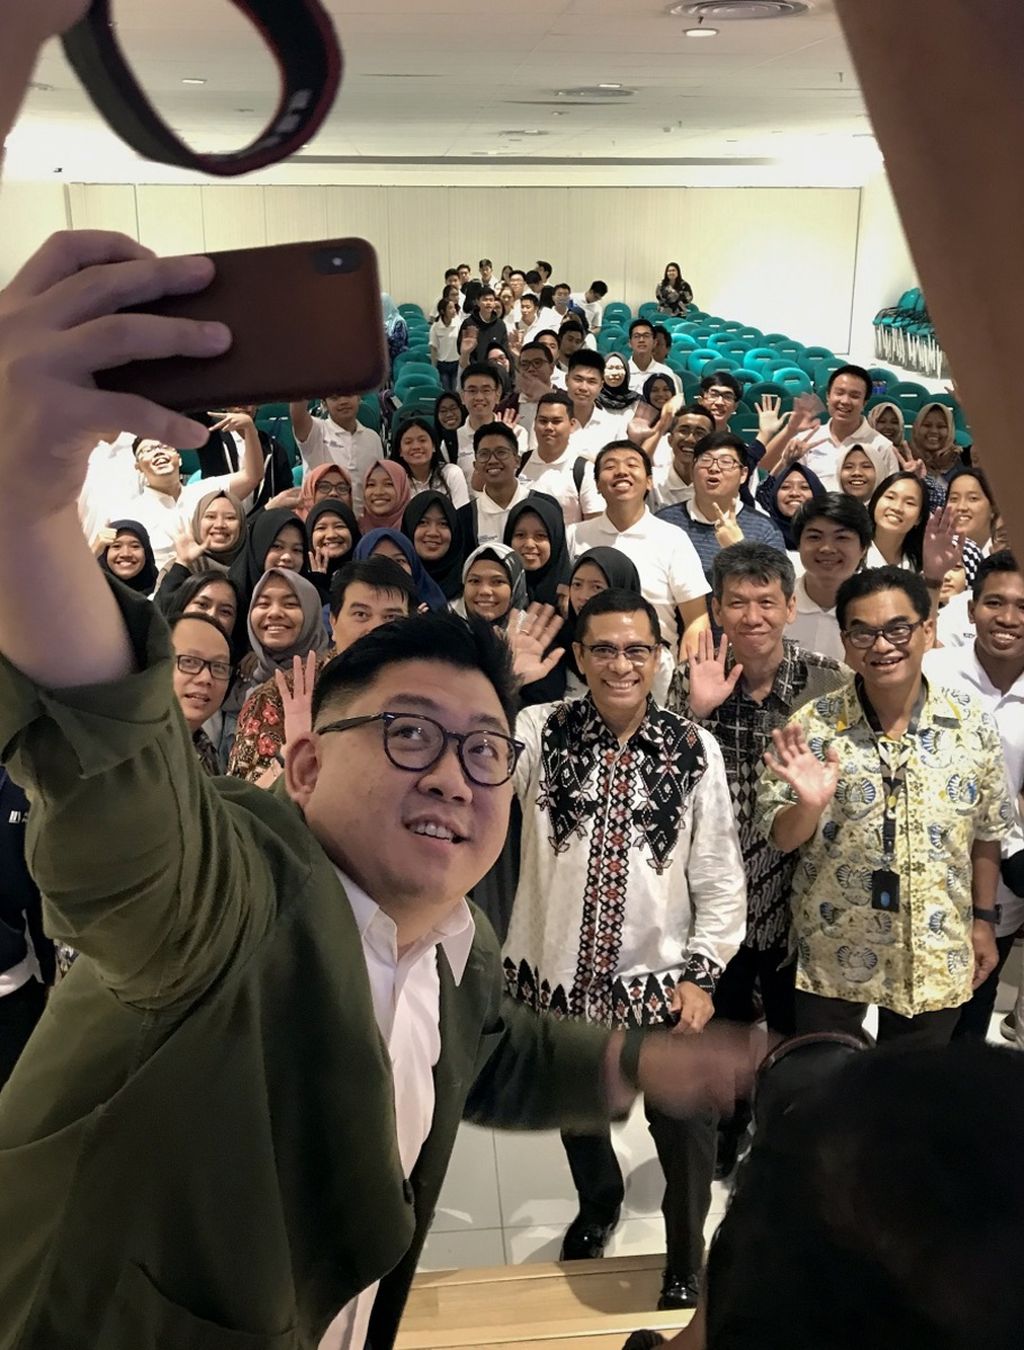 Pemenang Kompetisi Ide Bisnis SiDU Youth Entrepreneurs Forum 2019 berfoto bersama para juri. Juara 1 kompetisi tersebut diraih oleh Haykal Satria Panjeraino dari Sekolah Bisnis dan Manajemen (SBM) Institut Teknologi Bandung (ITB), dengan ide bisnis Panjers.